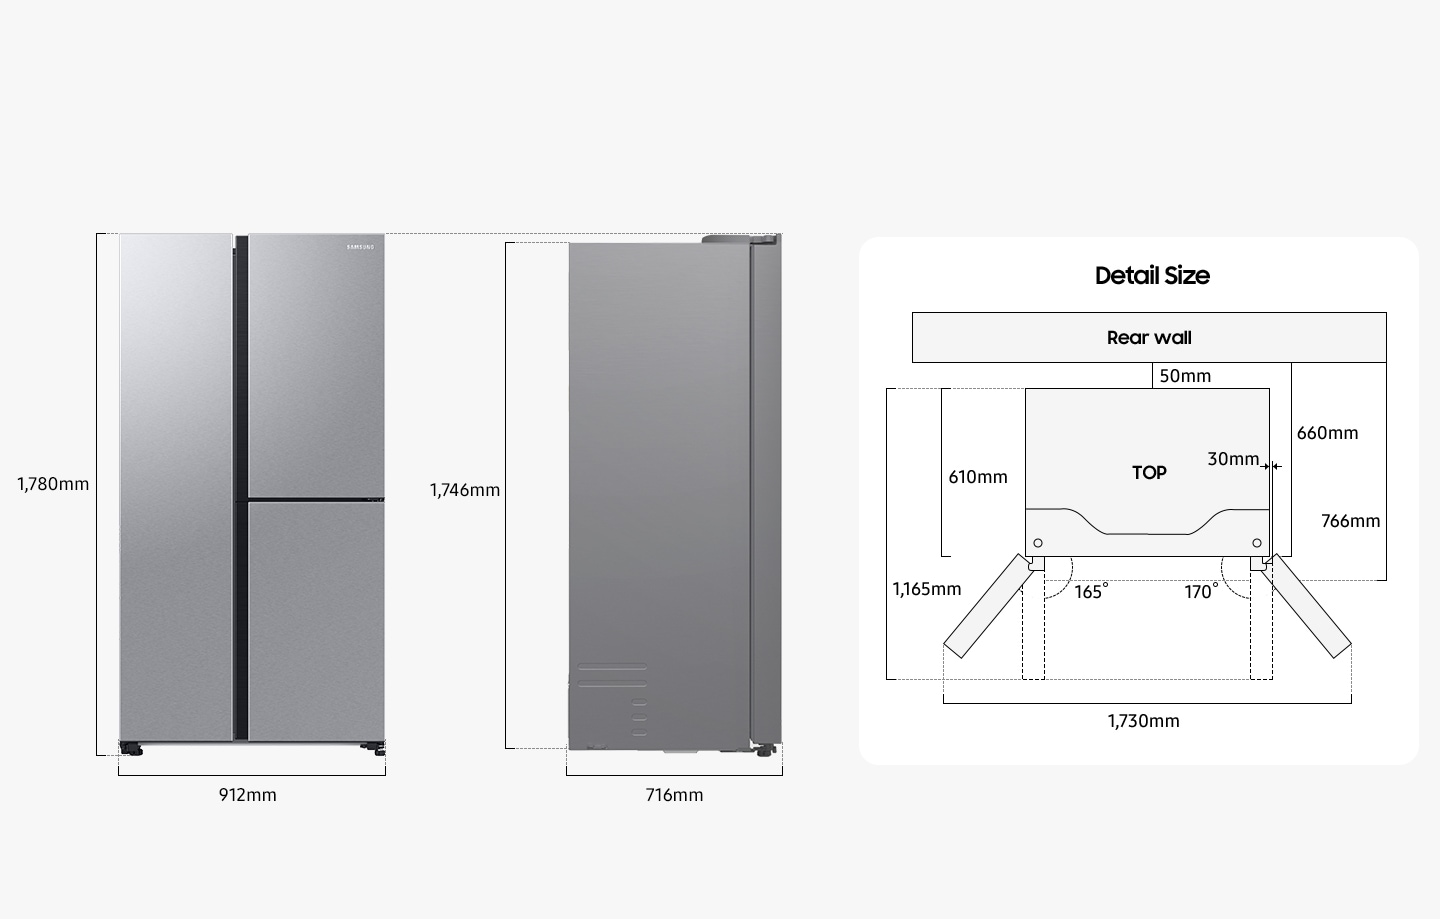 Il frigorifero è alto 1.780 mm compresa la porta, 912 mm di larghezza, 716 mm di profondità e 1.746 mm di altezza esclusa la porta dal retro. Durante l'installazione, il frigorifero deve trovarsi ad almeno 50 mm di distanza dalla parete posteriore. La profondità compreso lo spazio tra il frigorifero e la parete posteriore e il corpo del frigorifero è di 660 mm e la profondità compreso lo spazio tra il frigorifero e la parete posteriore e il corpo del frigorifero e la porta del frigorifero è di 766 mm. La profondità del frigorifero installato esclusa la porta chiusa è di 610 mm e la profondità del frigorifero installato, compresa la porta aperta a 90 gradi, è di 1.165 mm e anche la porta del frigorifero sporge di 30 mm dal corpo del frigorifero. La porta destra si apre a 165 gradi e la porta sinistra si apre a 170 gradi. La larghezza quando entrambe le porte sono completamente aperte è di 1.730 mm.